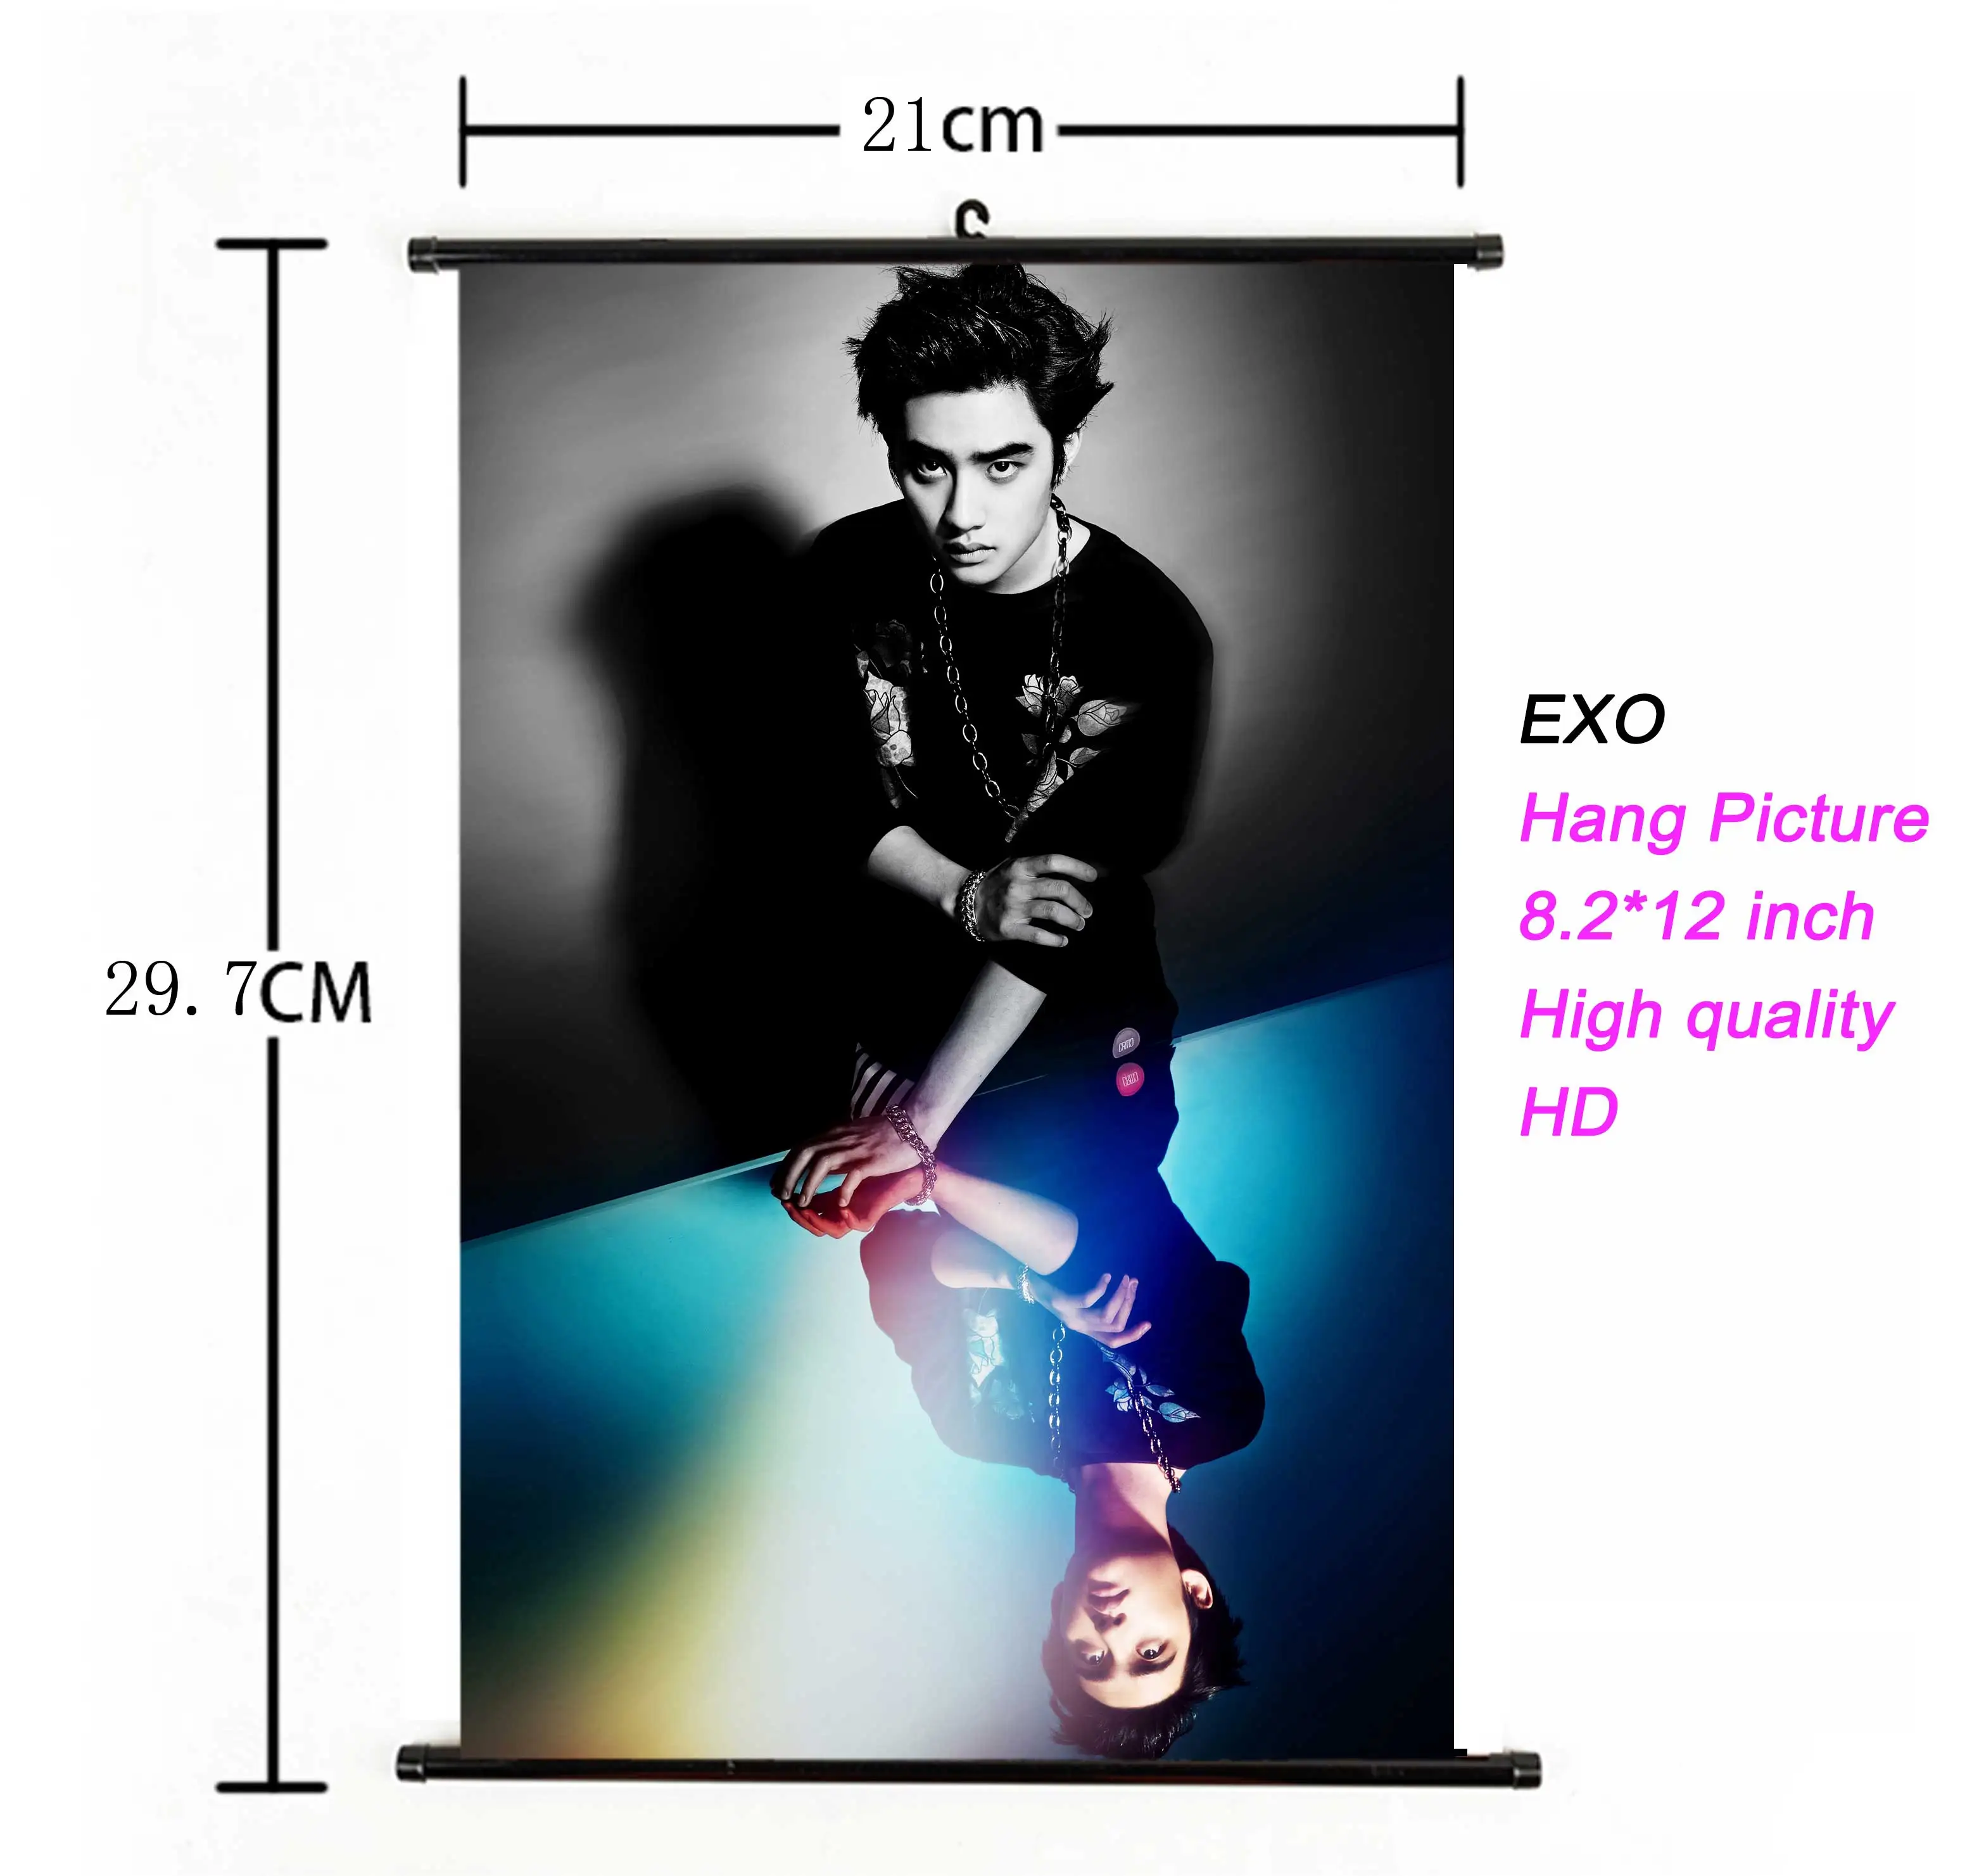 Kpop EXO висячий плакат для поклонников коллекции подарков ткань 21*30 см Высокое качество k-pop EXO альбом висячая картина фото плакат - Цвет: 25